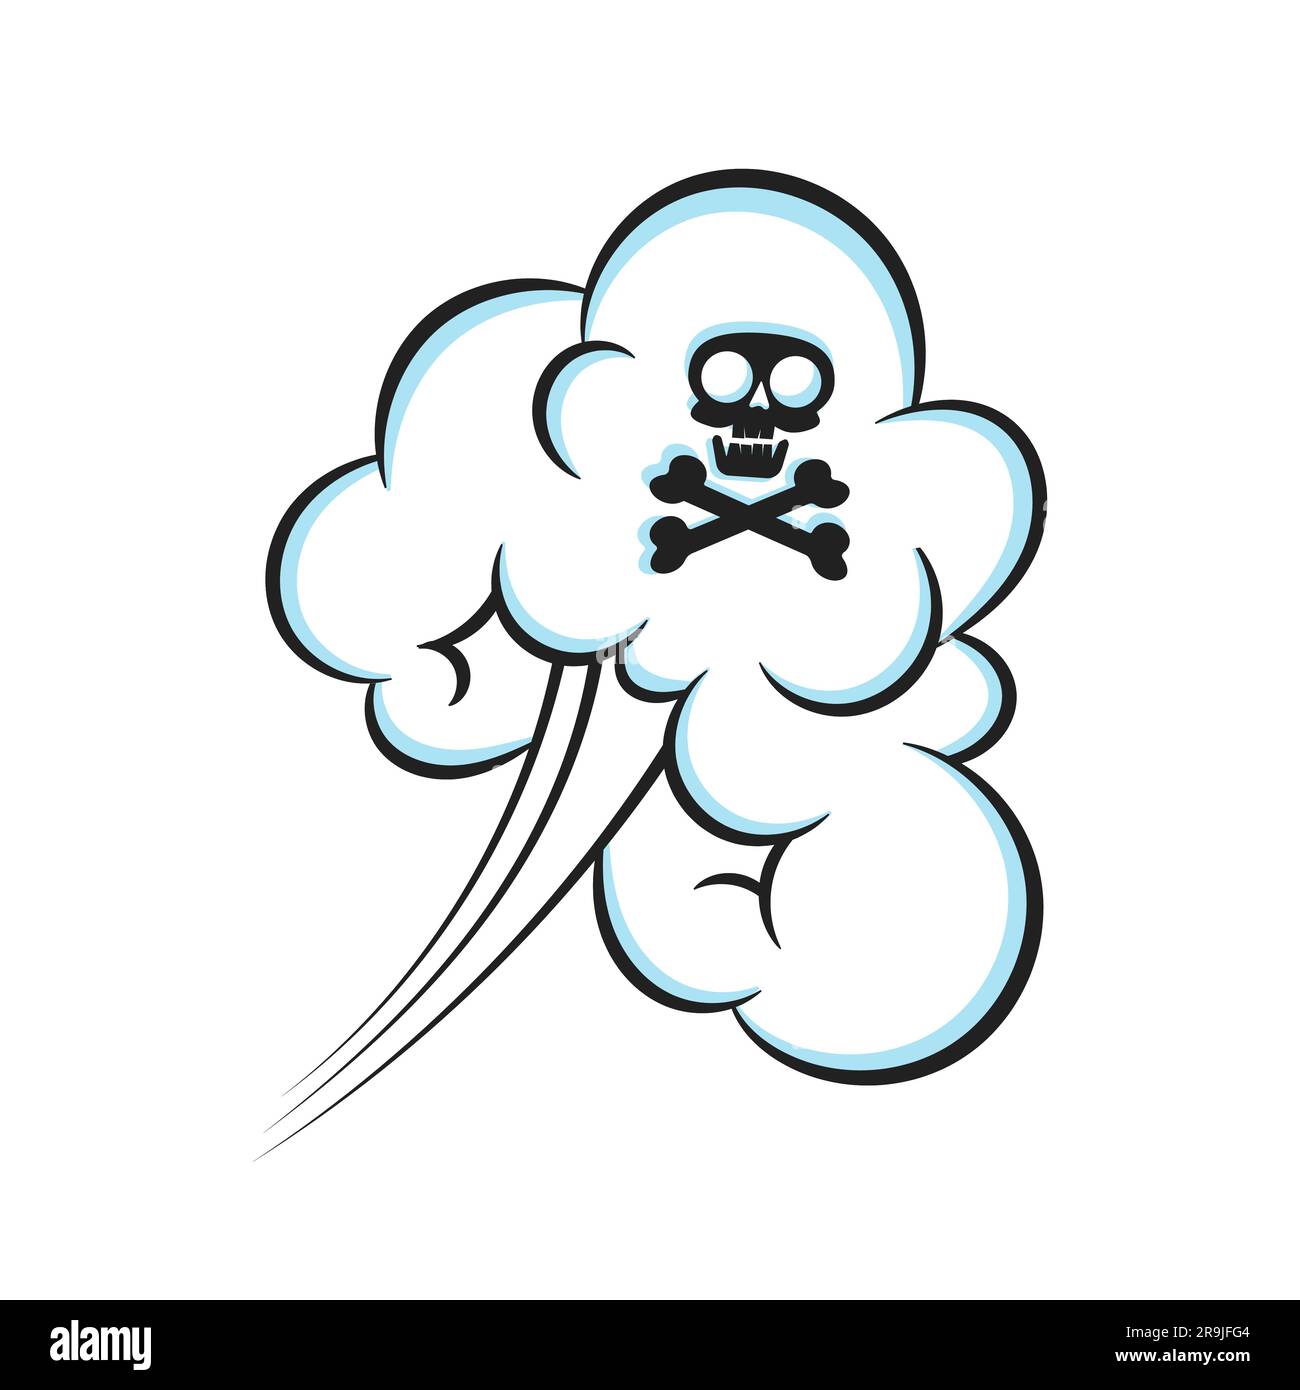 Humo de pedos oliendo nube con cráneo y huesos cruzados pop art cómic libro de dibujos animados estilo plano ilustración vectorial. Mal olor o mal olor a pedo tóxico Ilustración del Vector